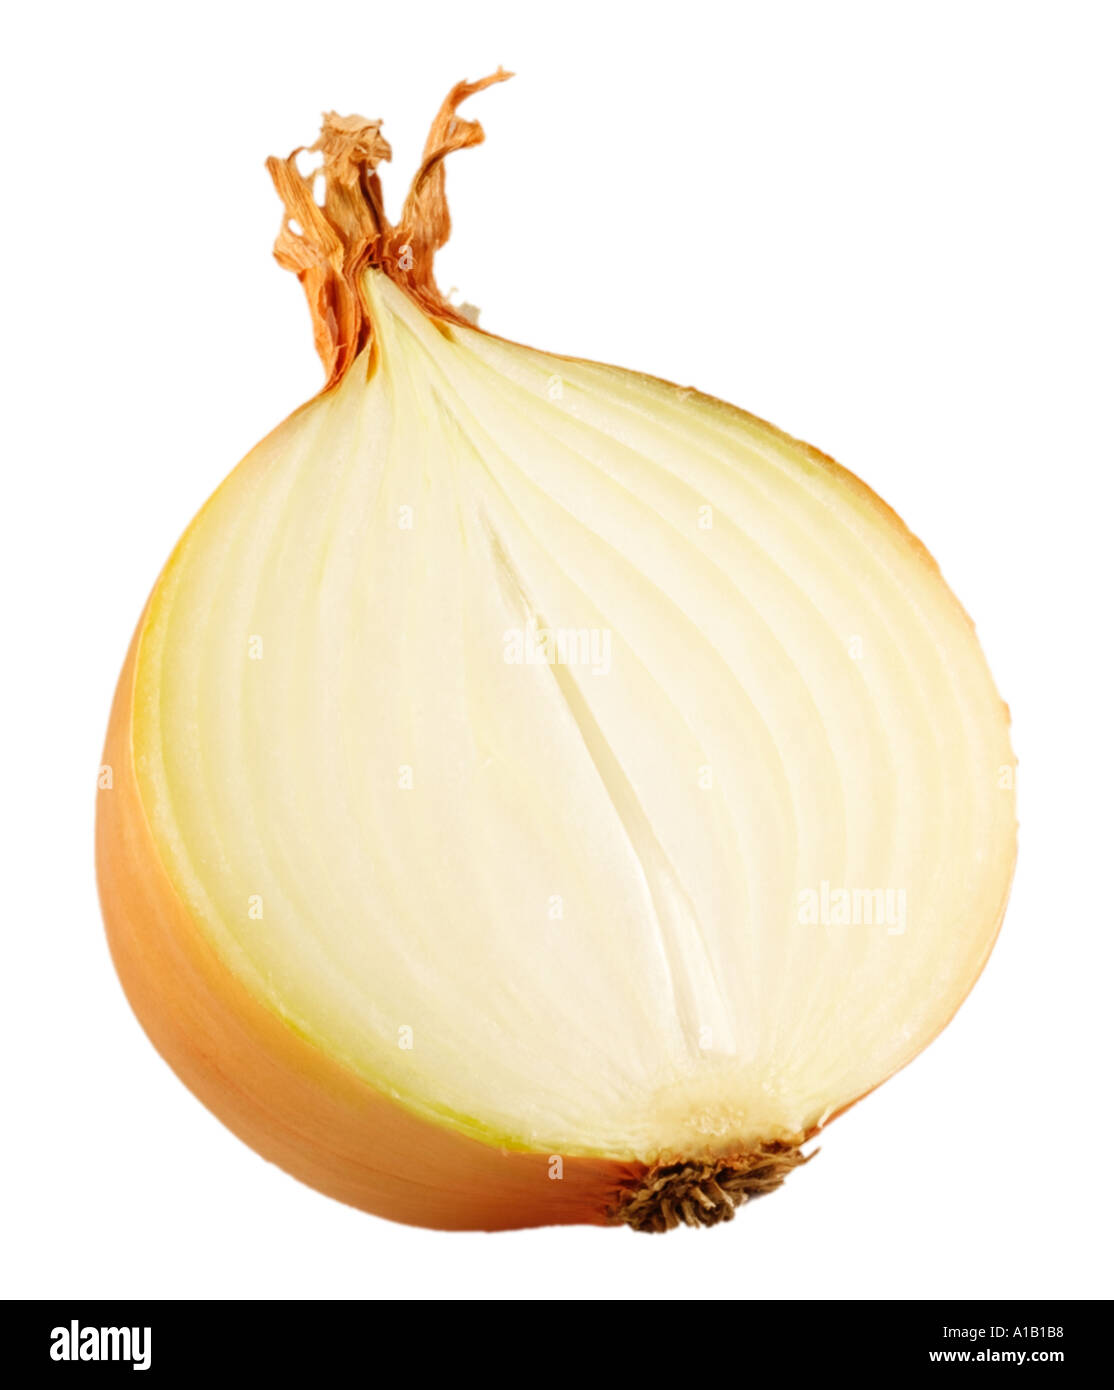 sliced onion on white Stock Photo